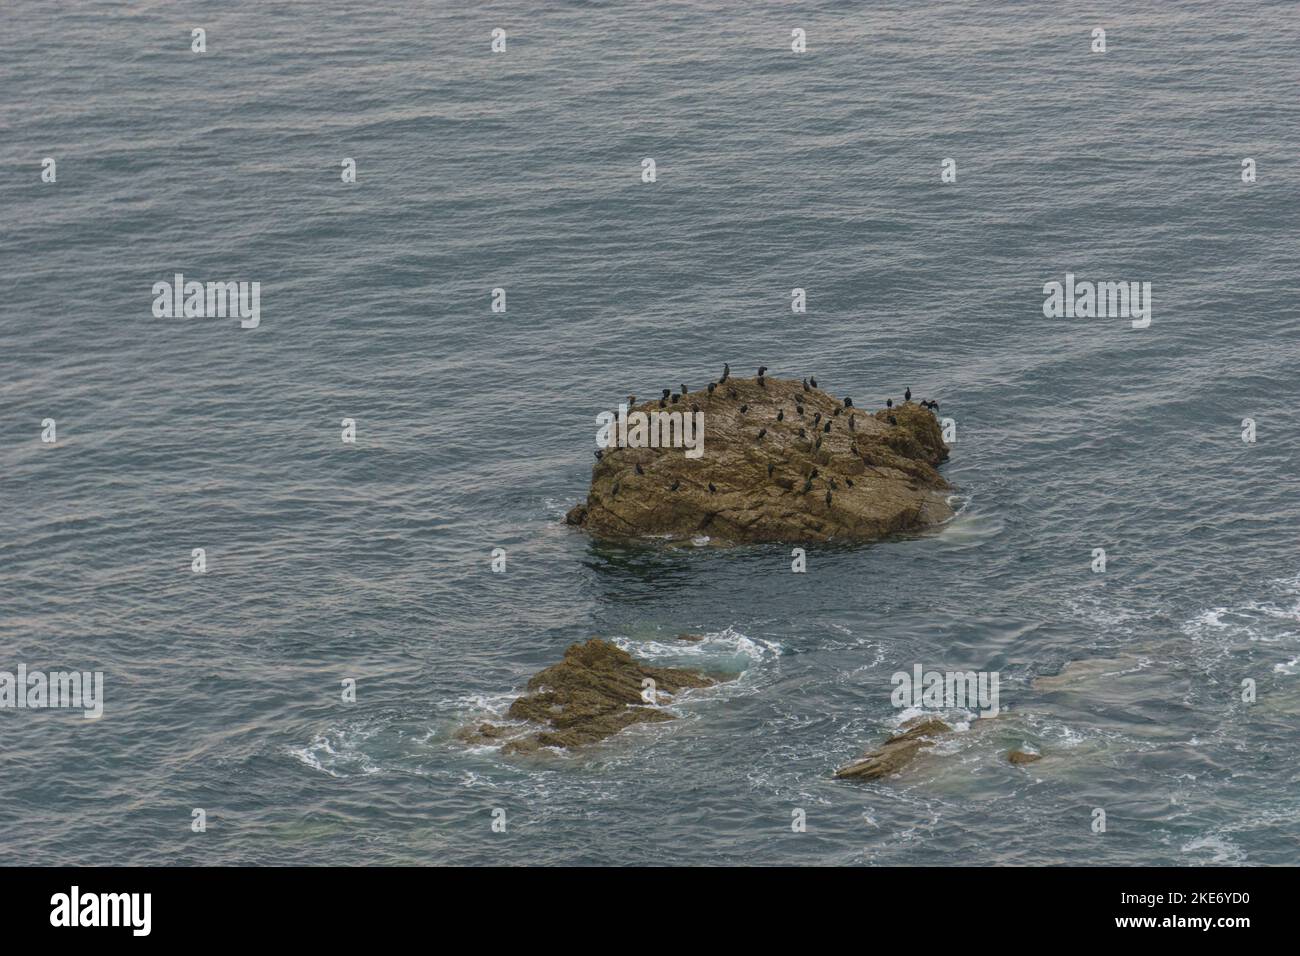 De nombreux oiseaux de scories noires assis sur une île rocheuse de la côte bretonne près du Cap de la Chevre, parc naturel régional d'Armorique, Bretagne, France Banque D'Images